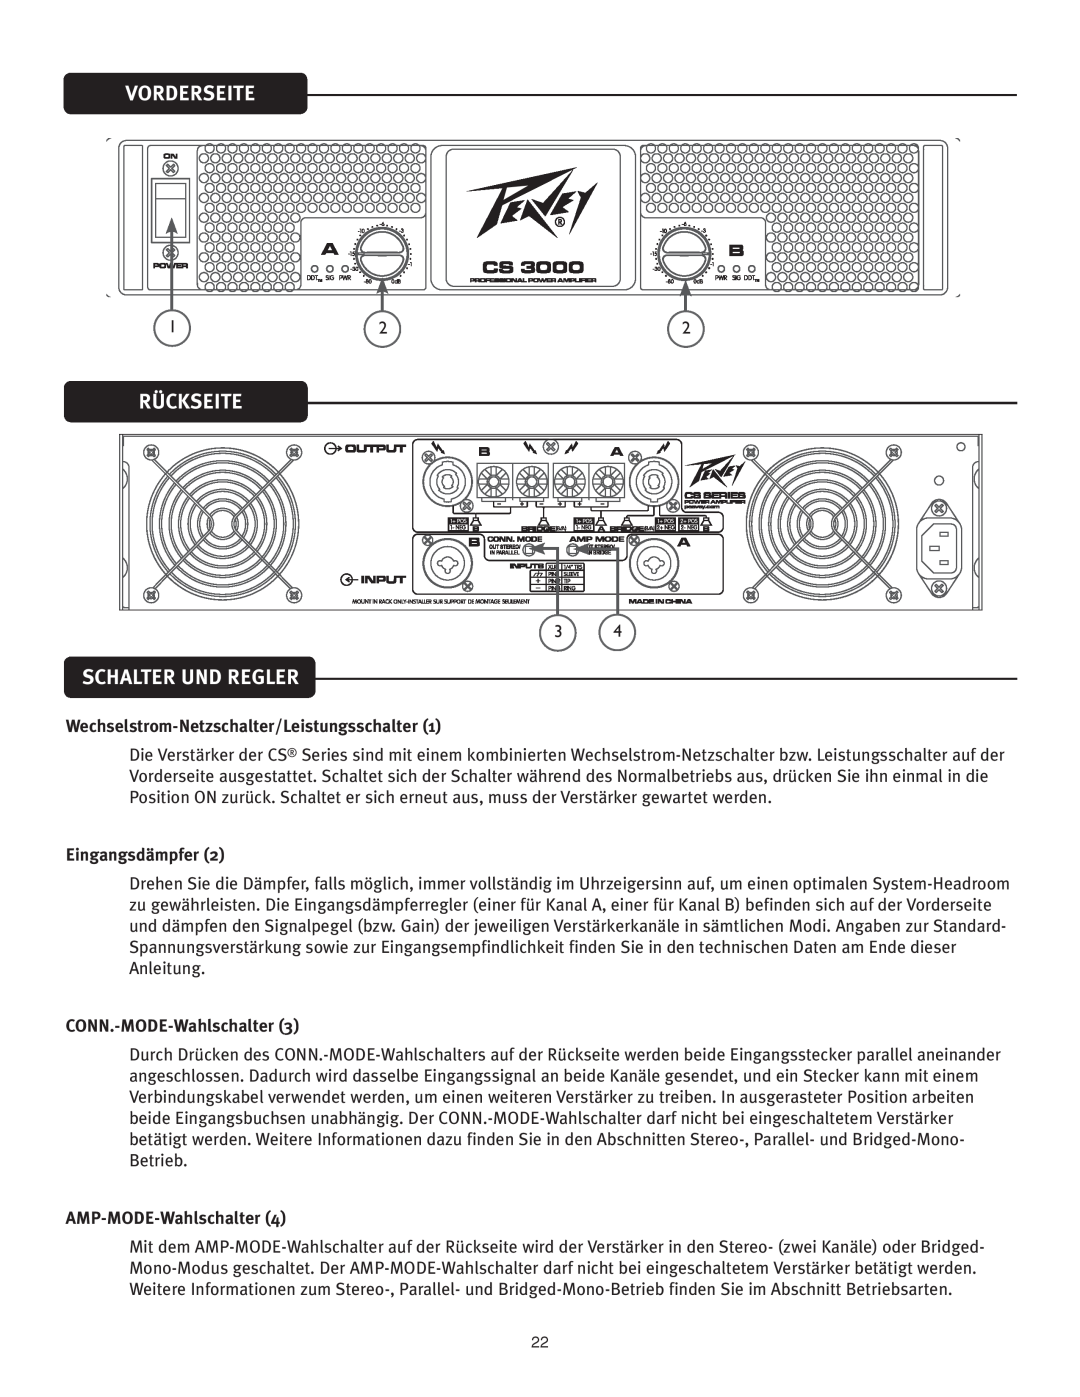 Peavey CS 3000 Vorderseite, Rückseite, Schalter Und Regler, Wechselstrom-Netzschalter/Leistungsschalter1, Eingangsdämpfer 